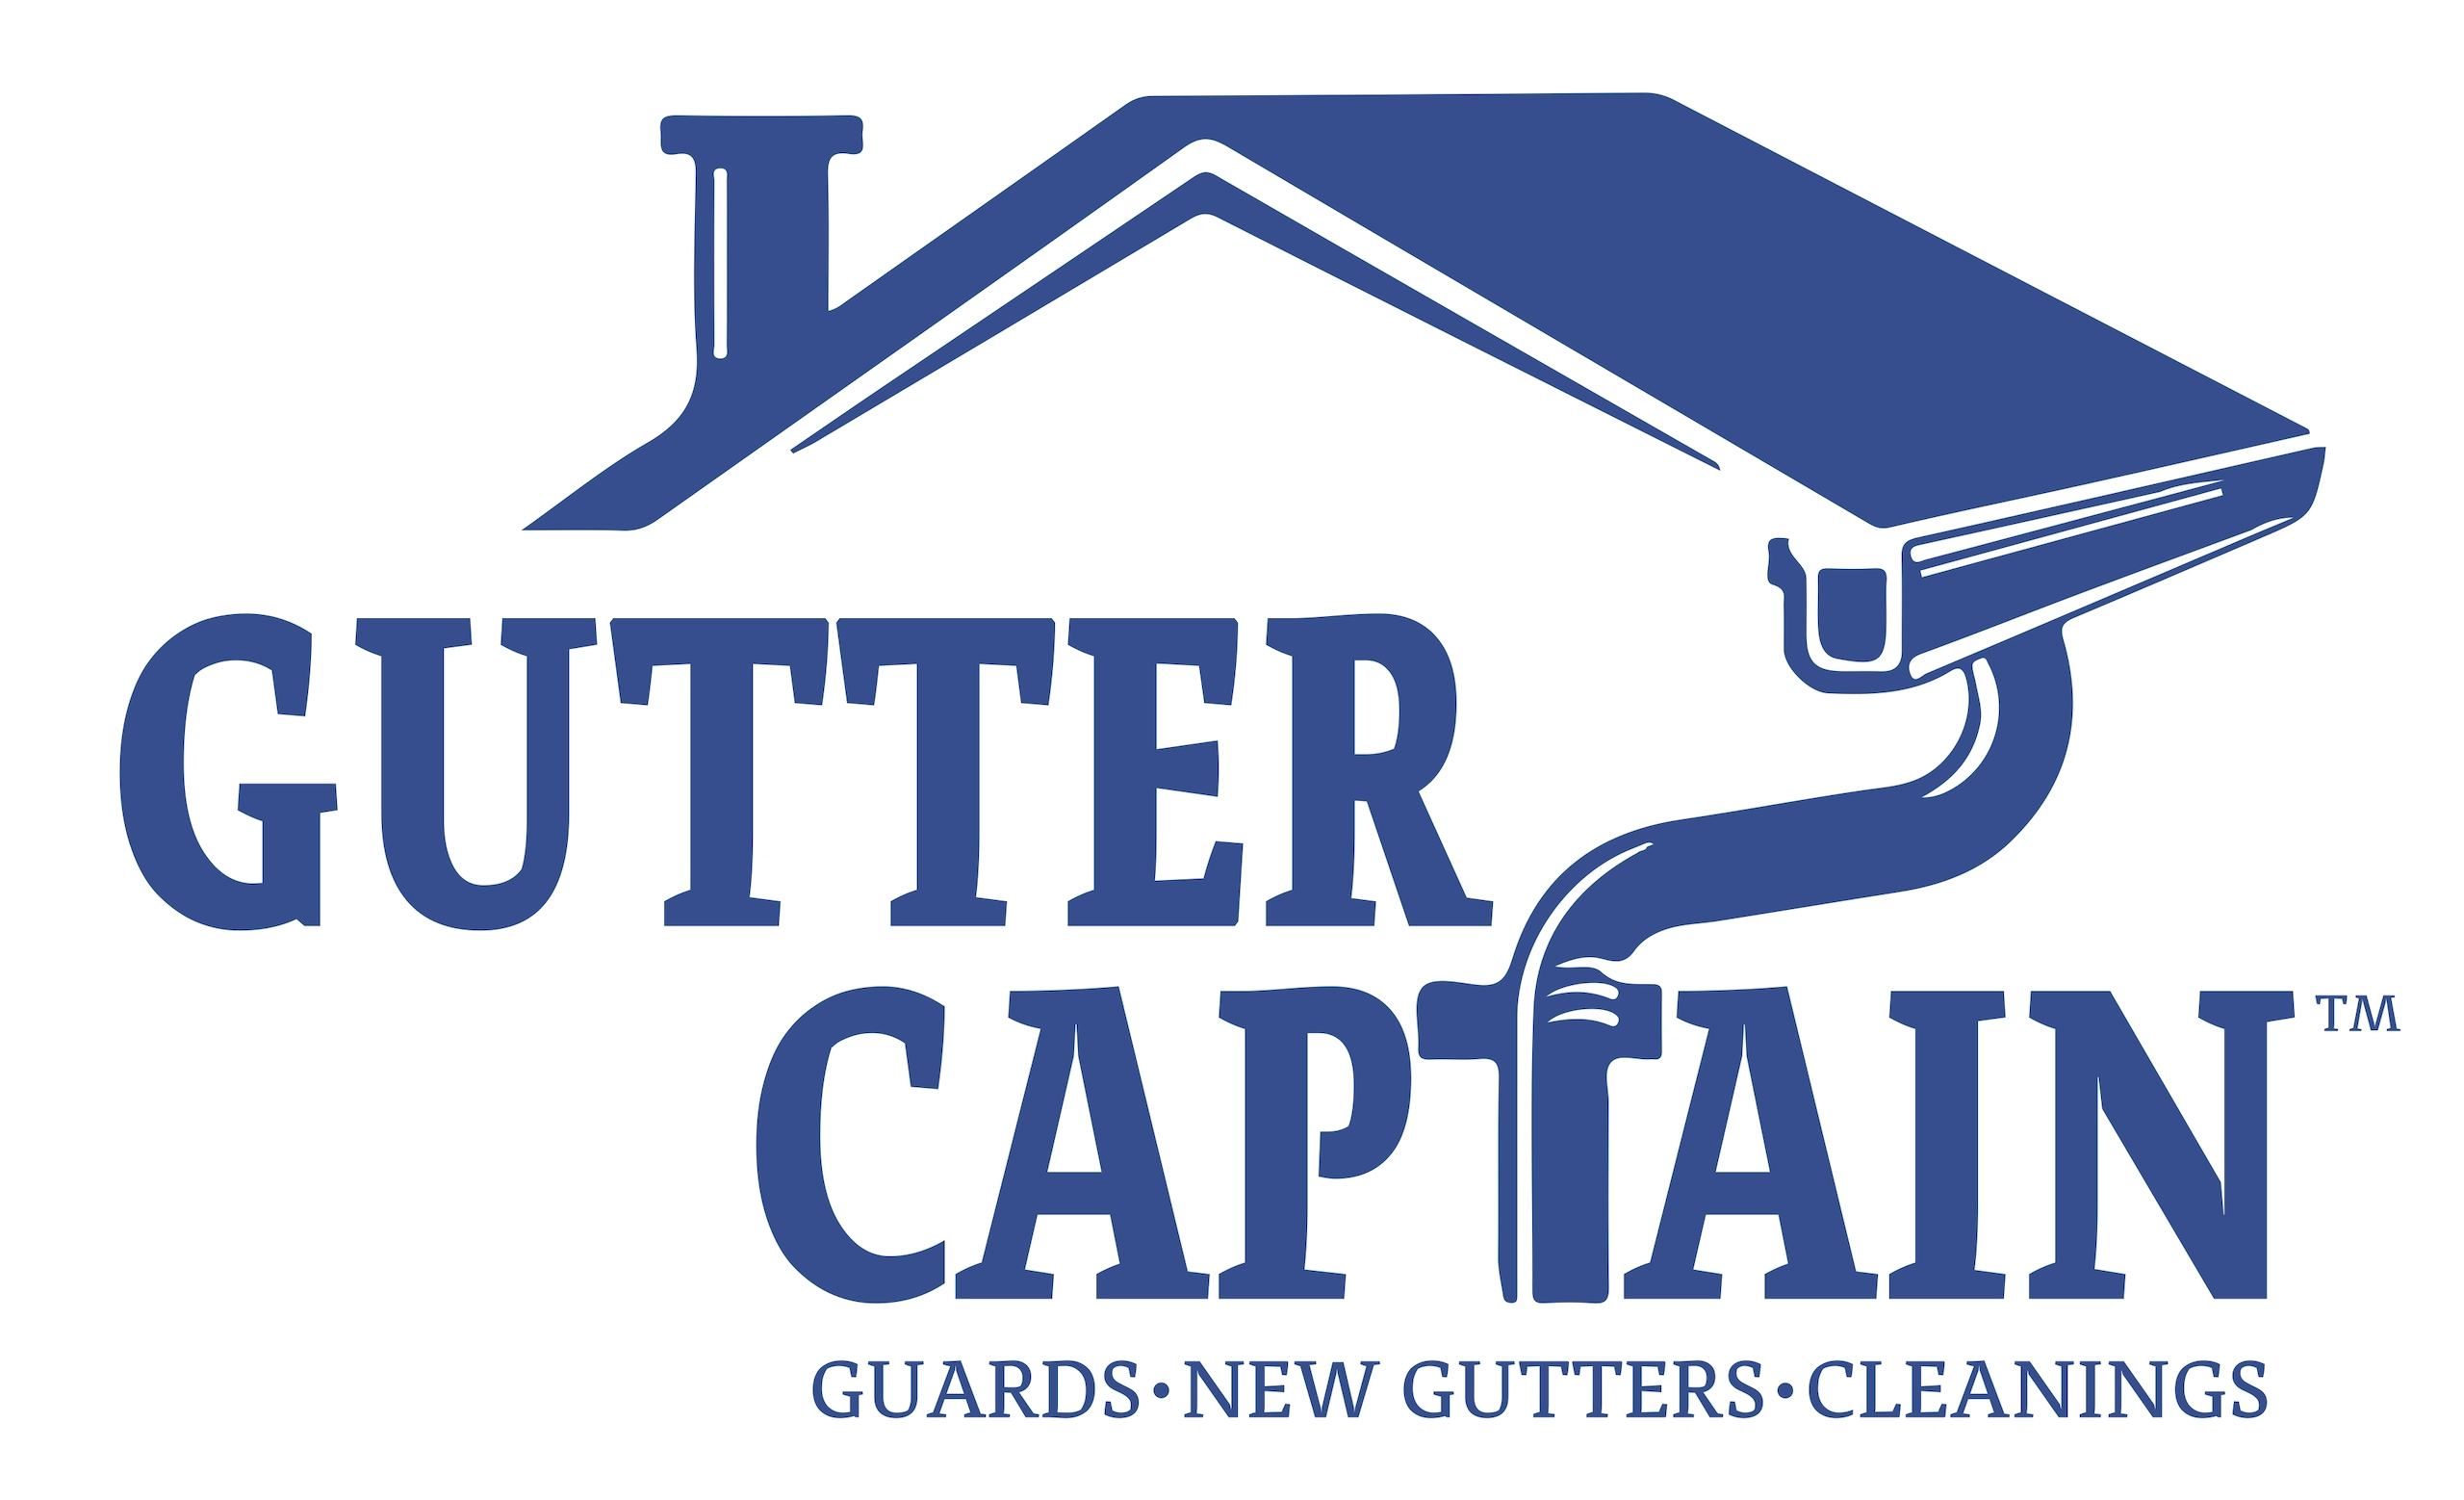 The Gutter Captain Logo